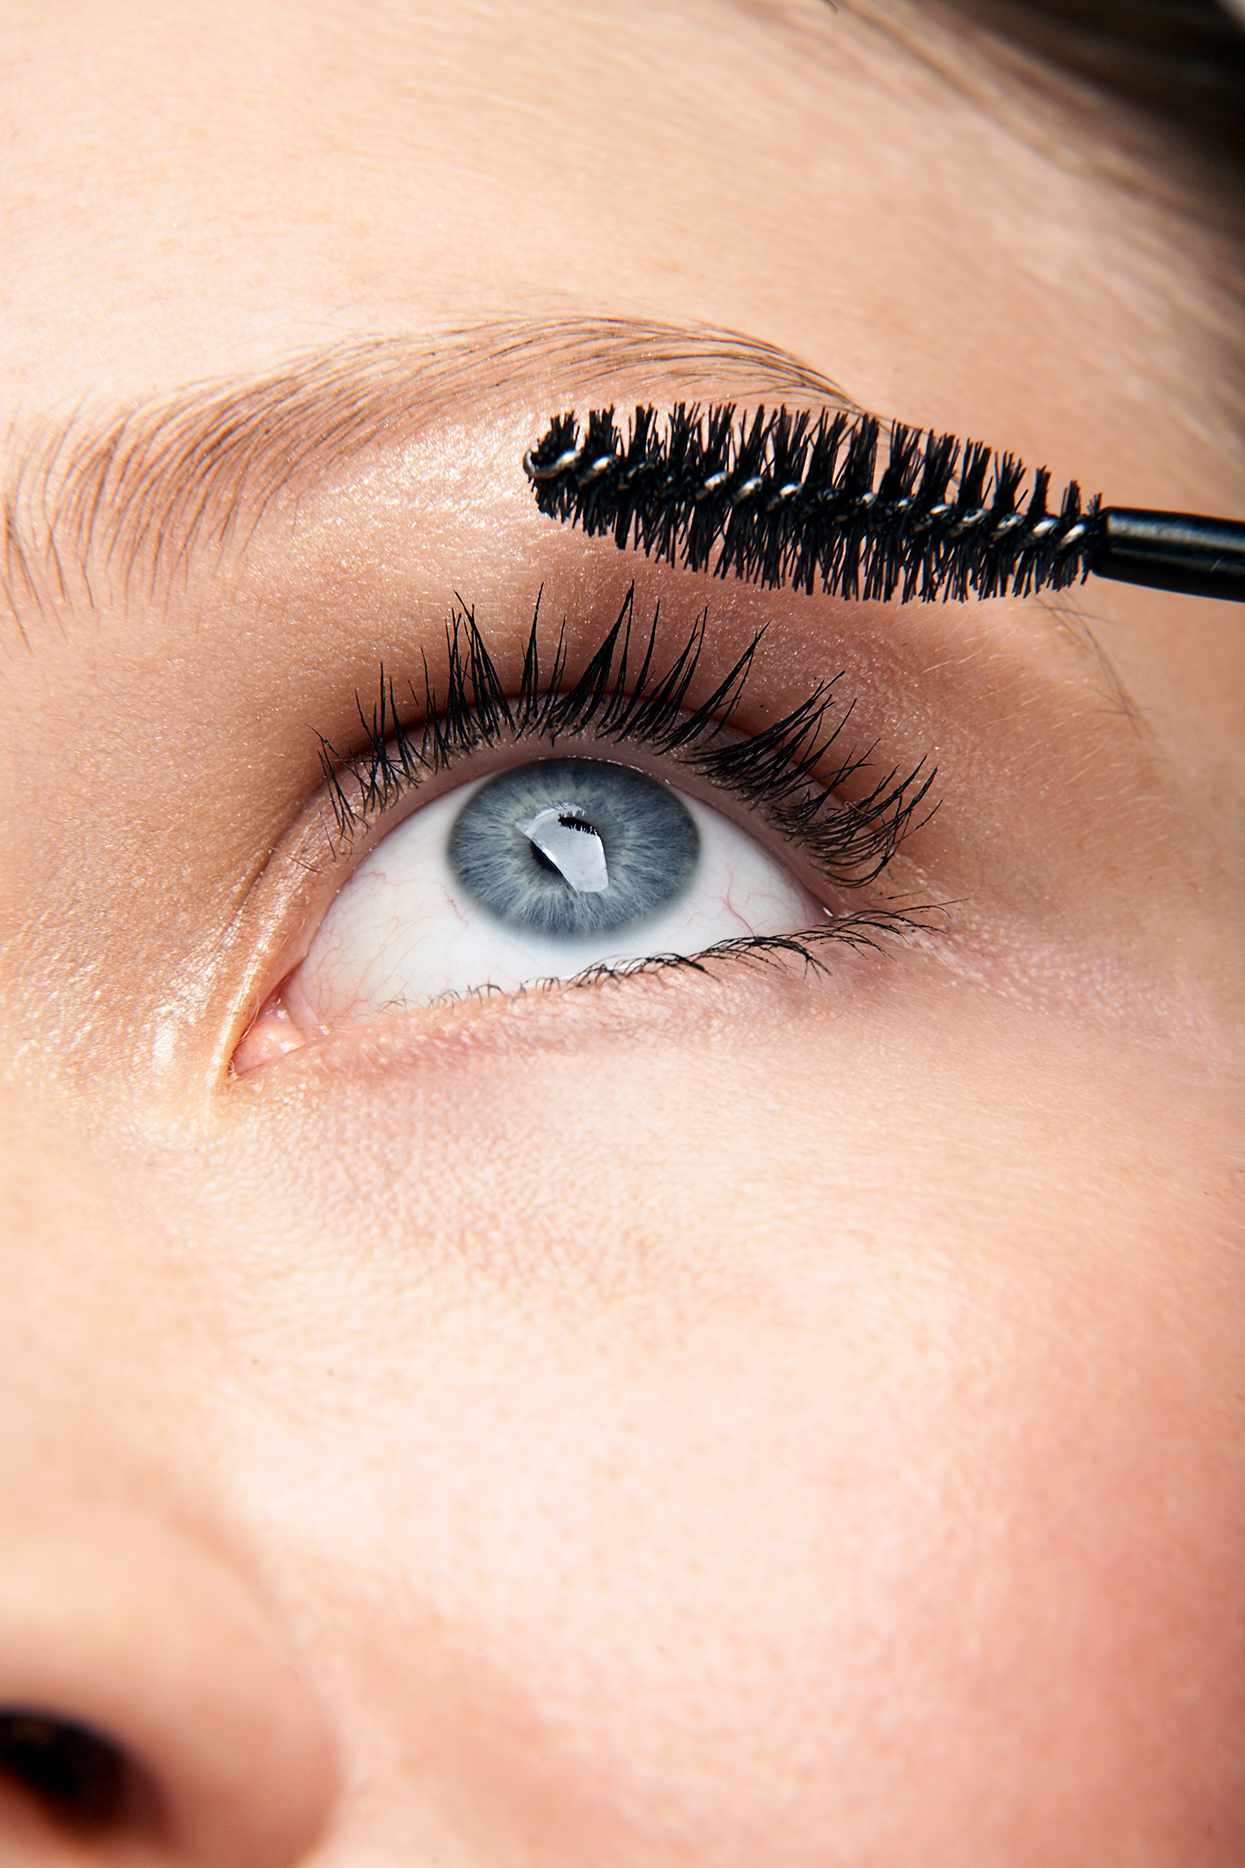 blue-eyed woman applying mascara to eyelashes